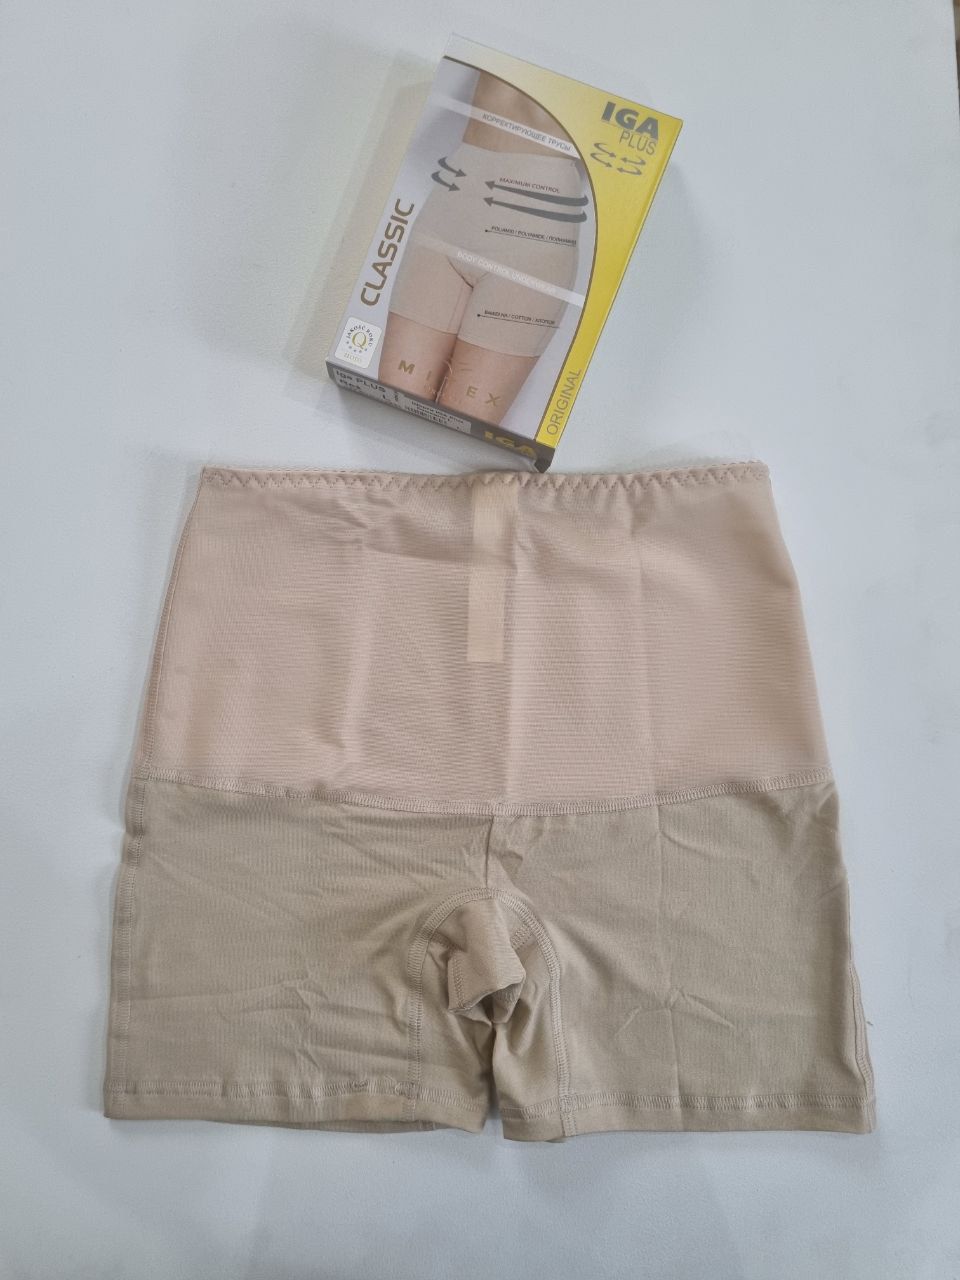 Утягивающие шорты от натирания бедер бежевые Mitex IGA Plus L